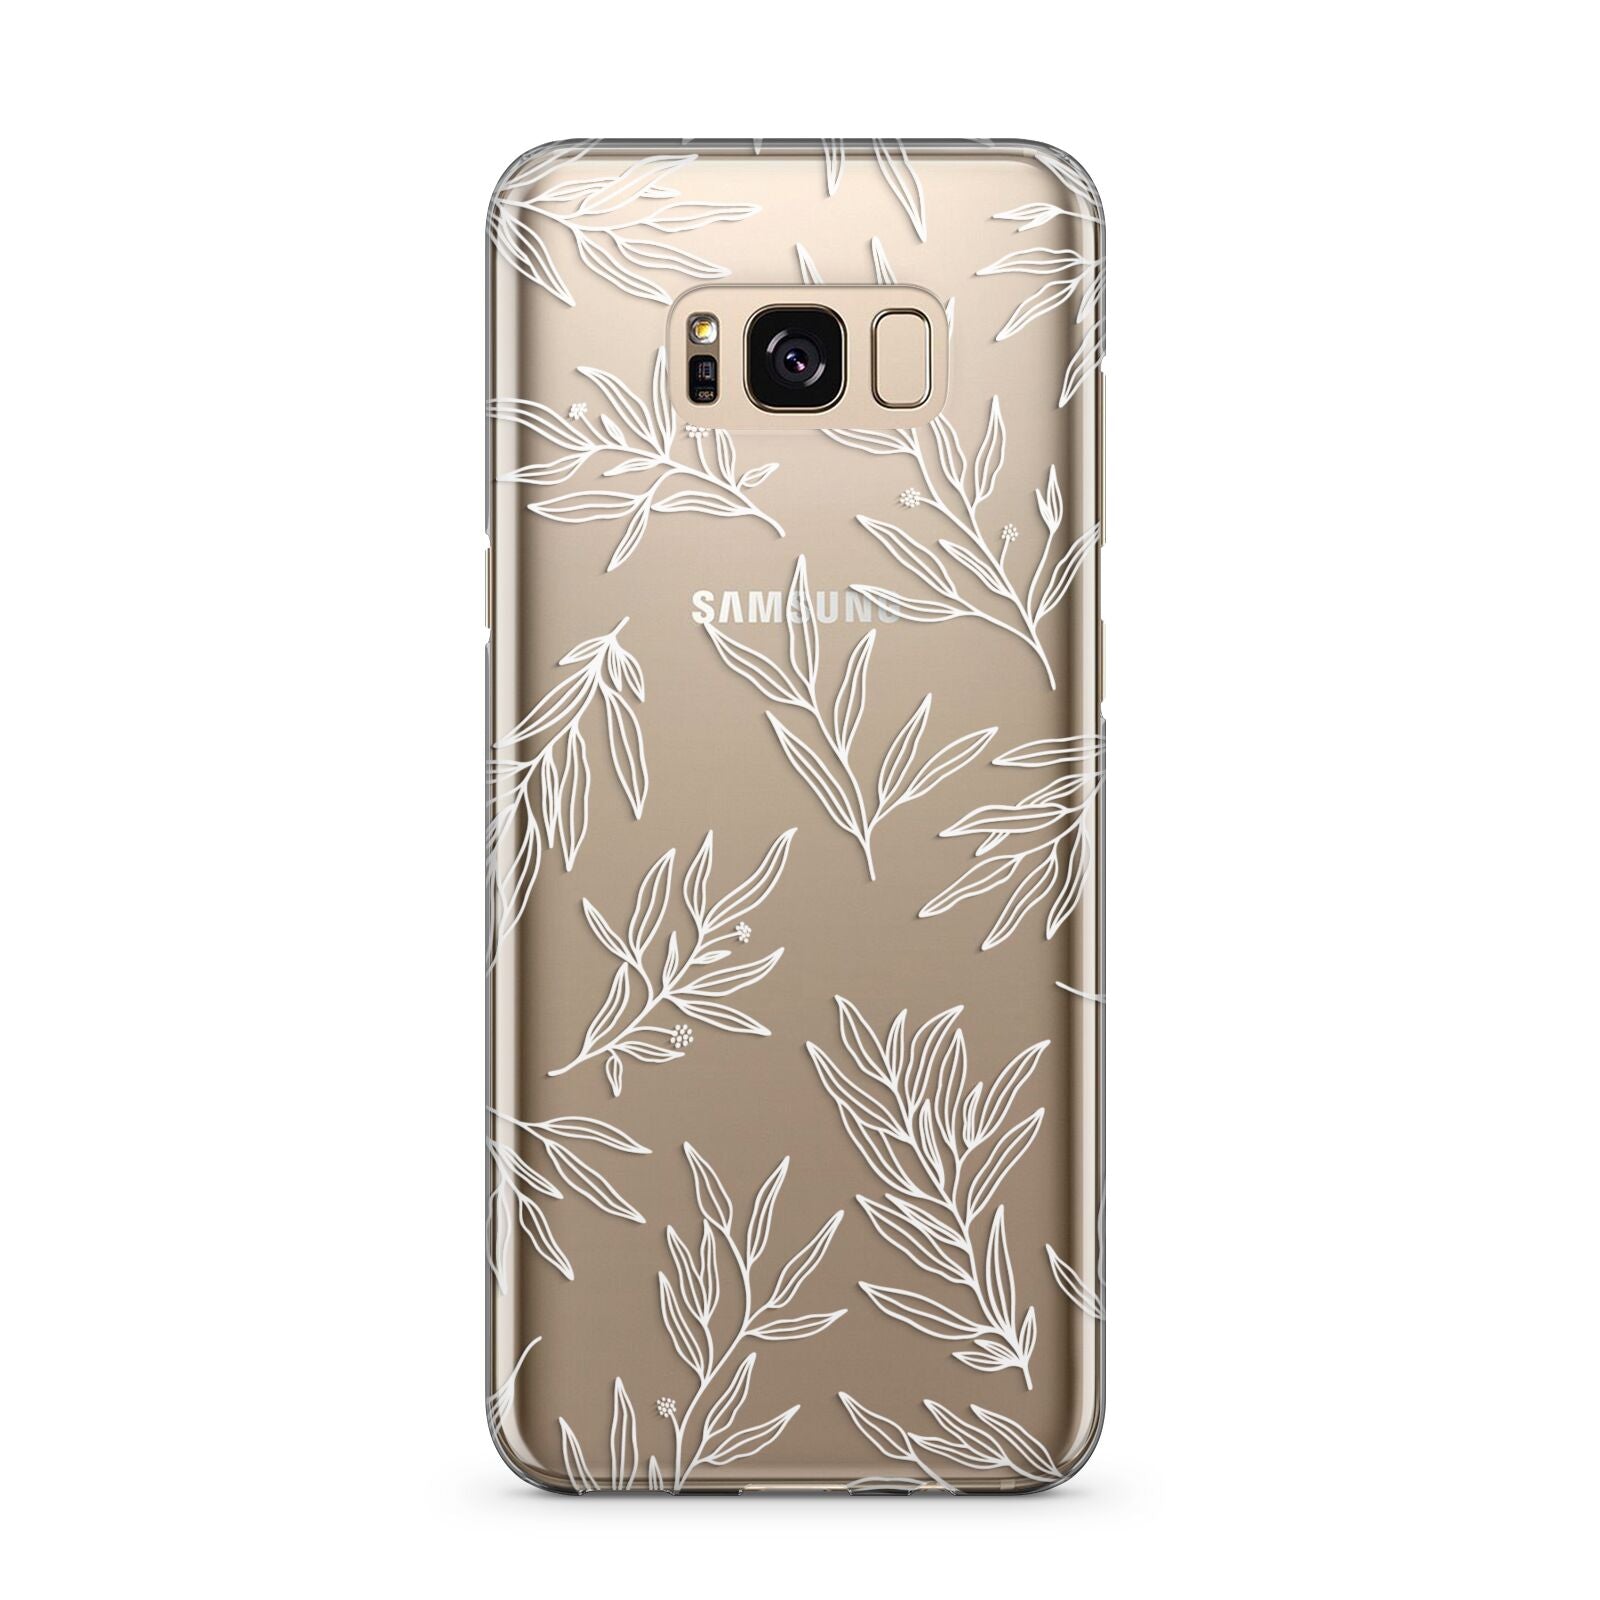 Botanical Leaf Samsung Galaxy S8 Plus Case